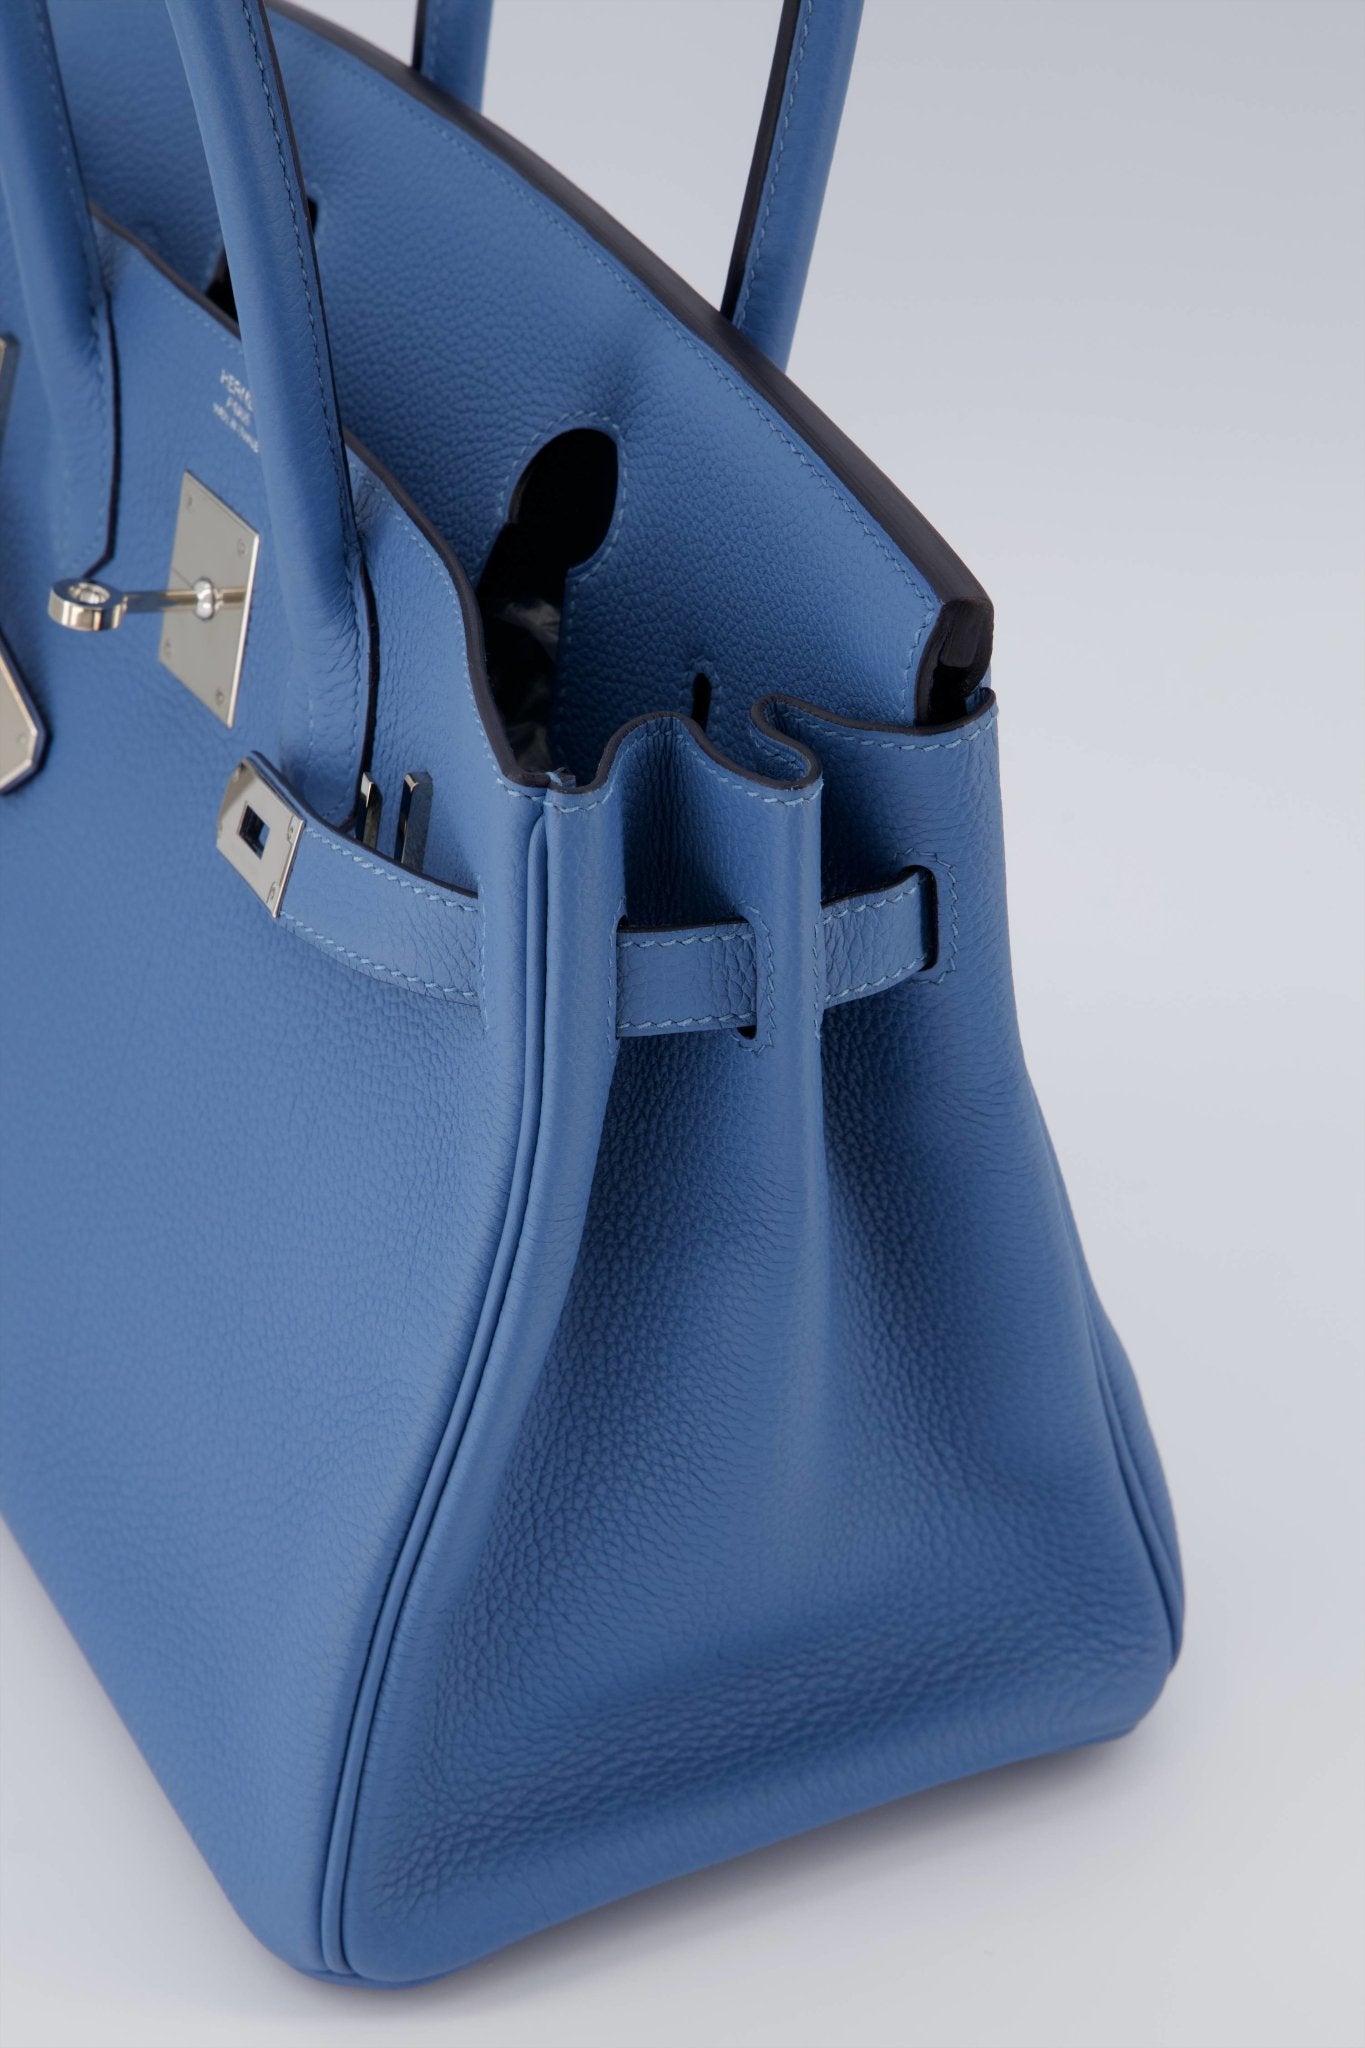 Hermes Birkin 30 Handbag Azur Togo Leather With Palladium Hardware